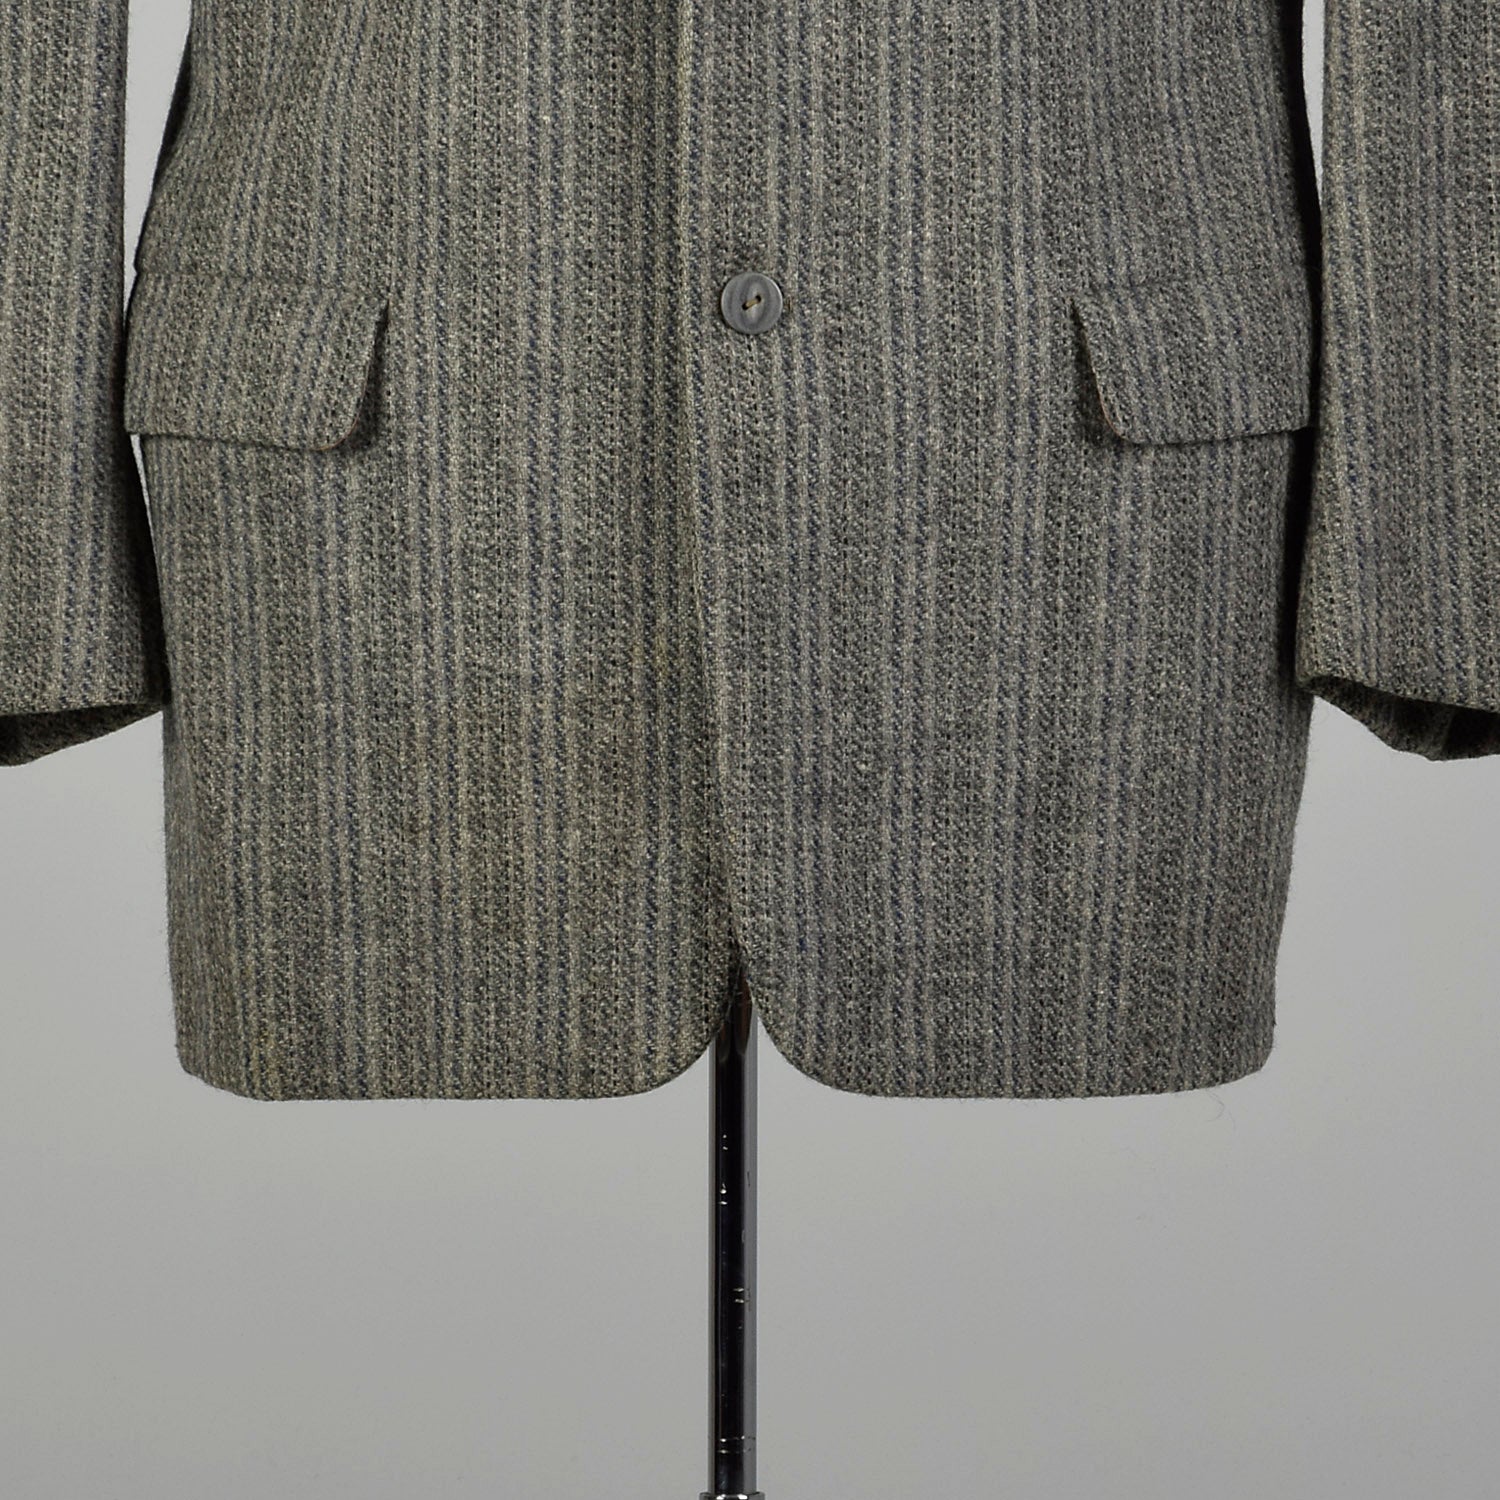 1950s Mens Wool Tweed Jacket Gray Stripe